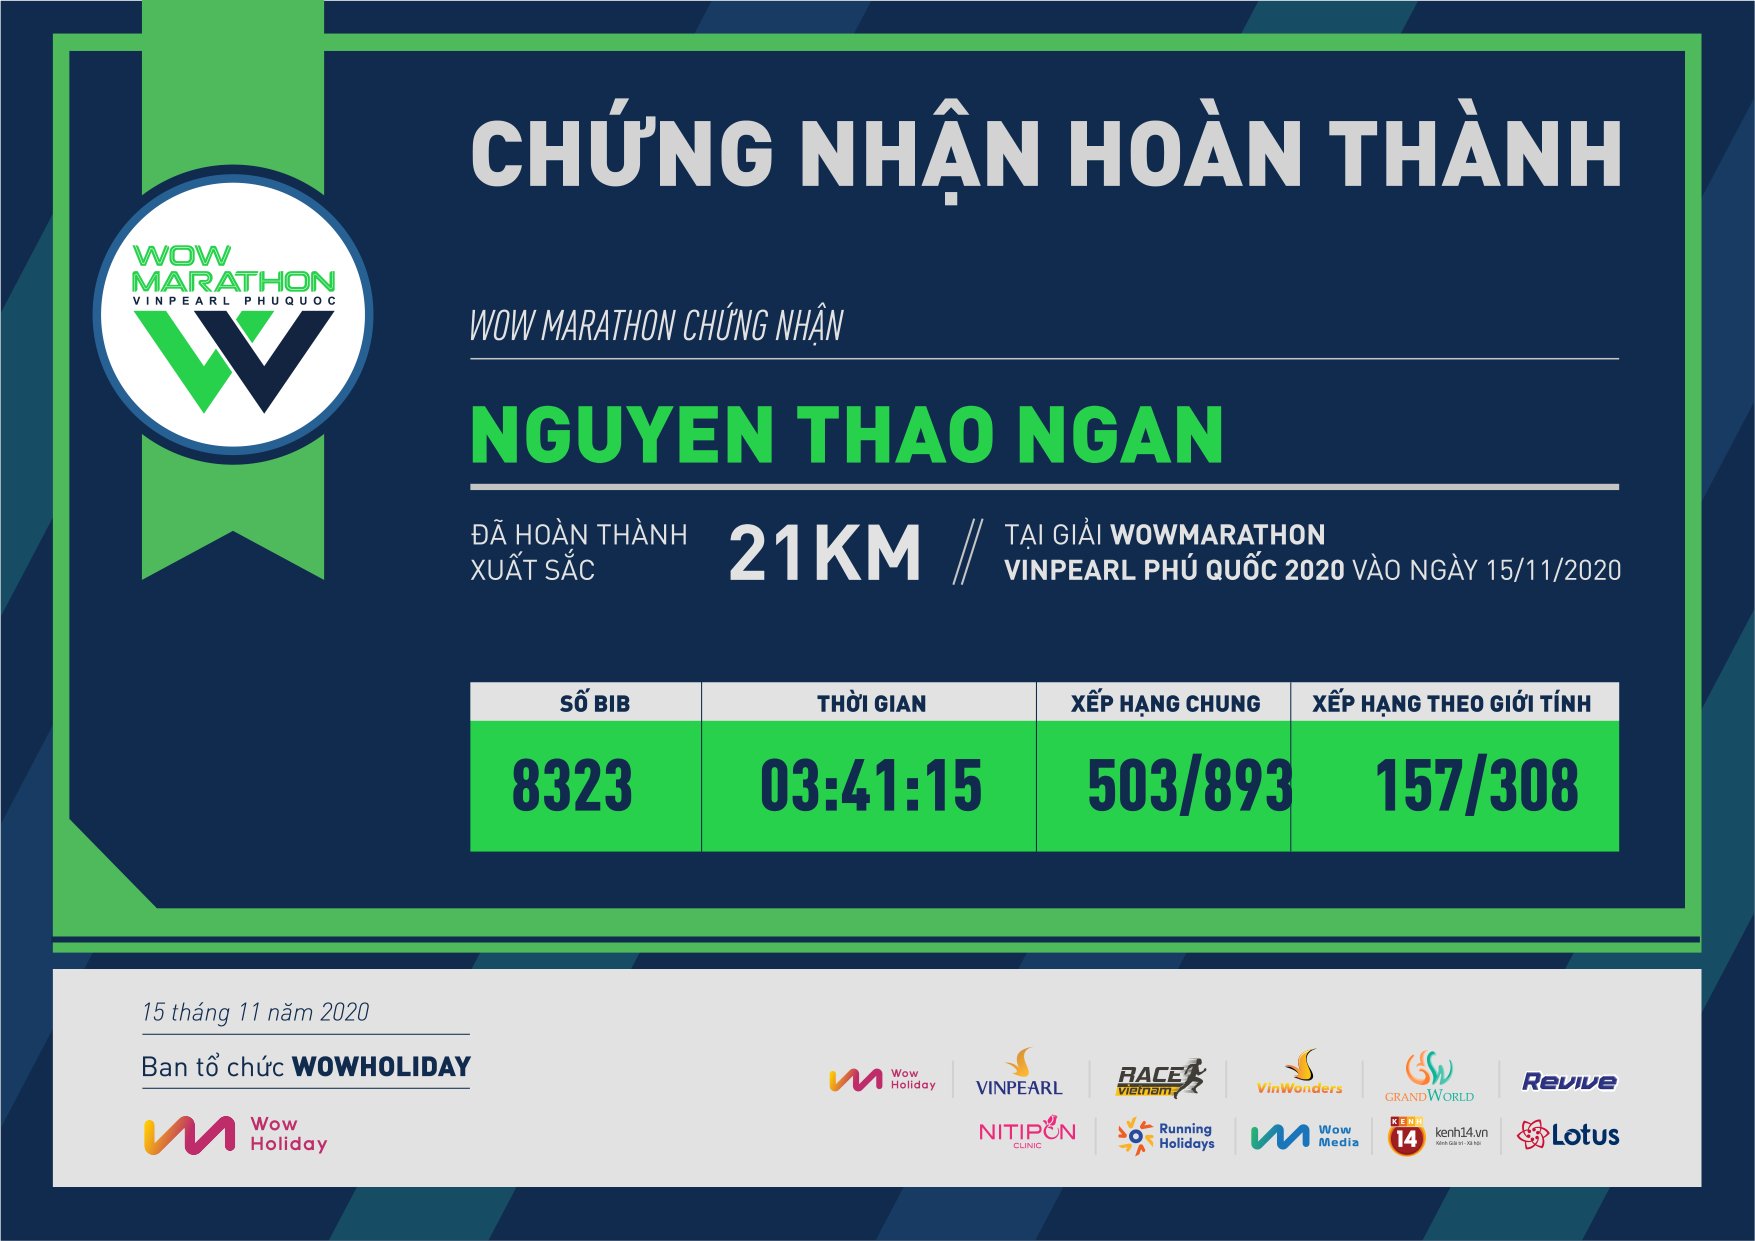 8323 - Nguyen Thao Ngan